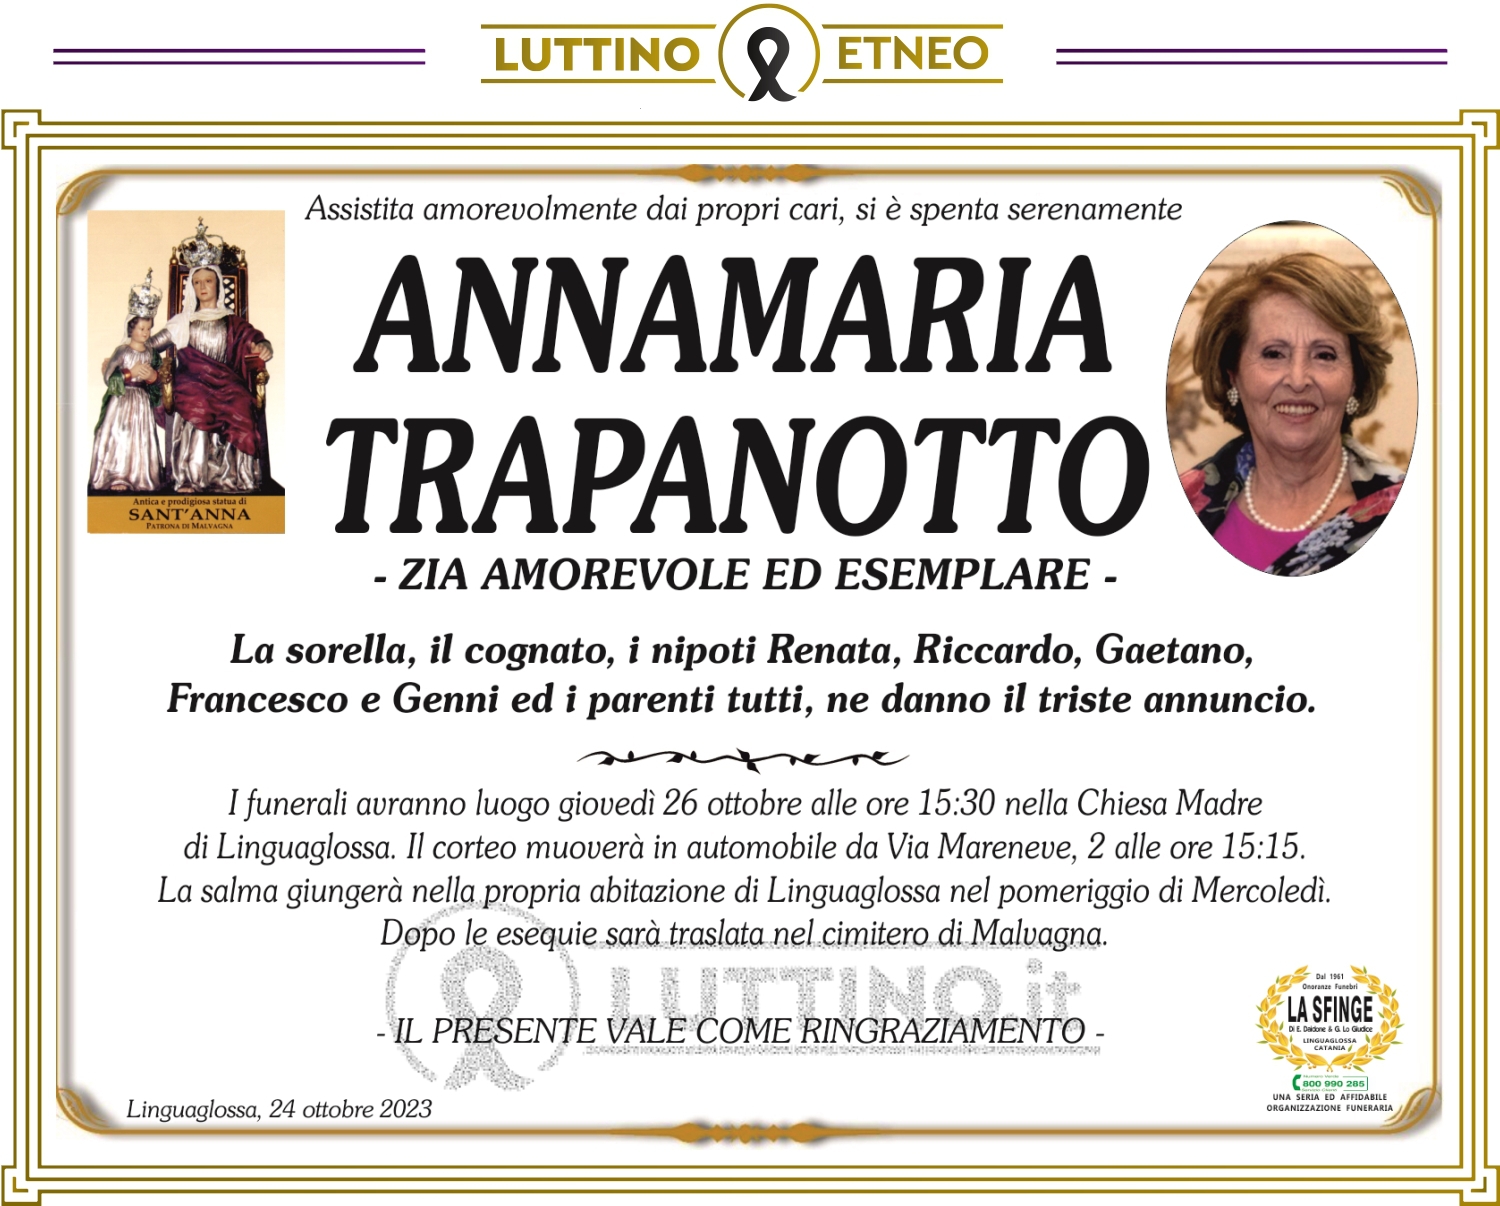 Annamaria Trapanotto